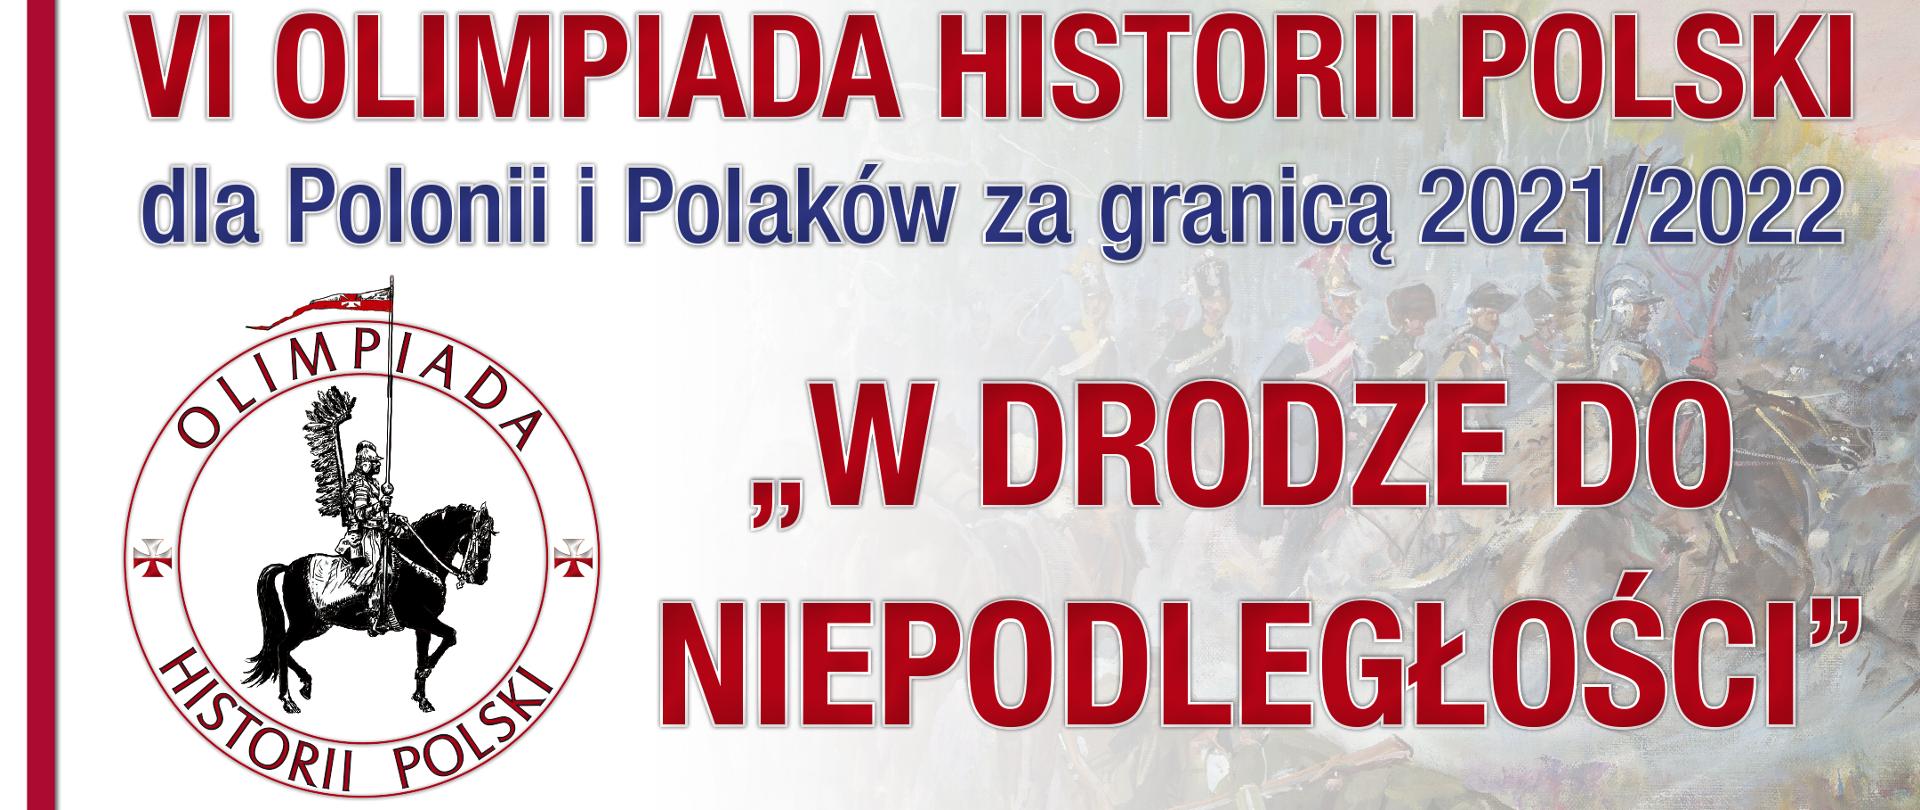 VI edycja Olimpiady Historii Polski dla Polonii i Polaków za granicą